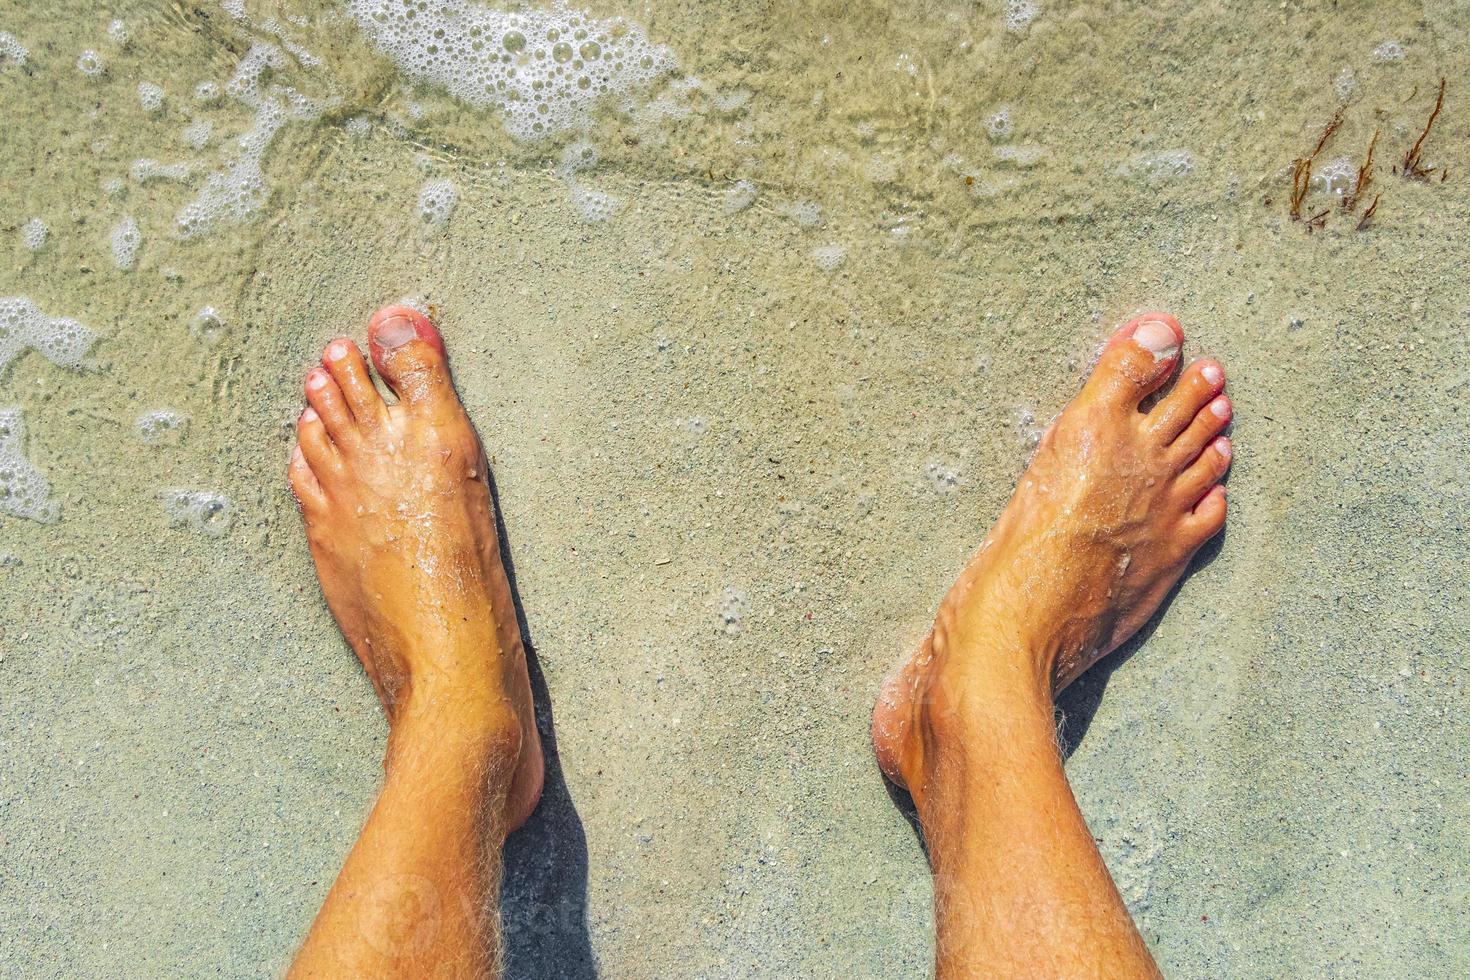 piedi in acqua e spiaggia di sabbia playa del carmen messico. foto